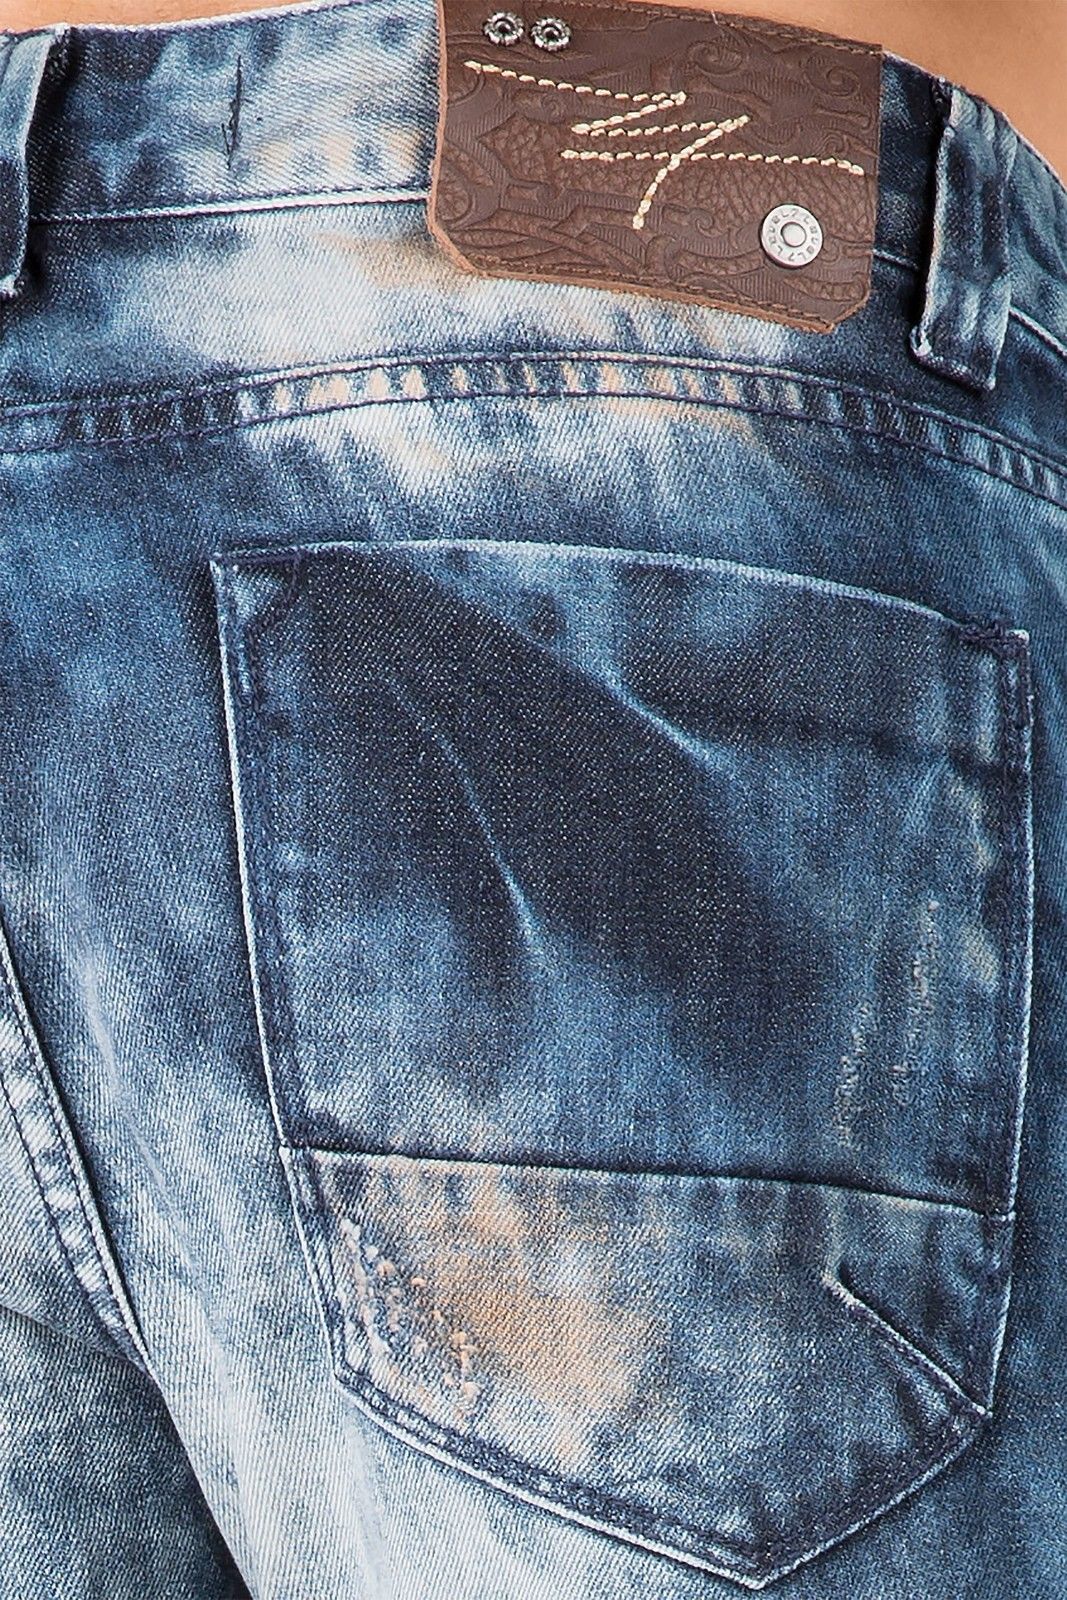 Slim Straight Medium Blue Premium Denim Signature 5 Pocket Jeans Bleached Prism Wash